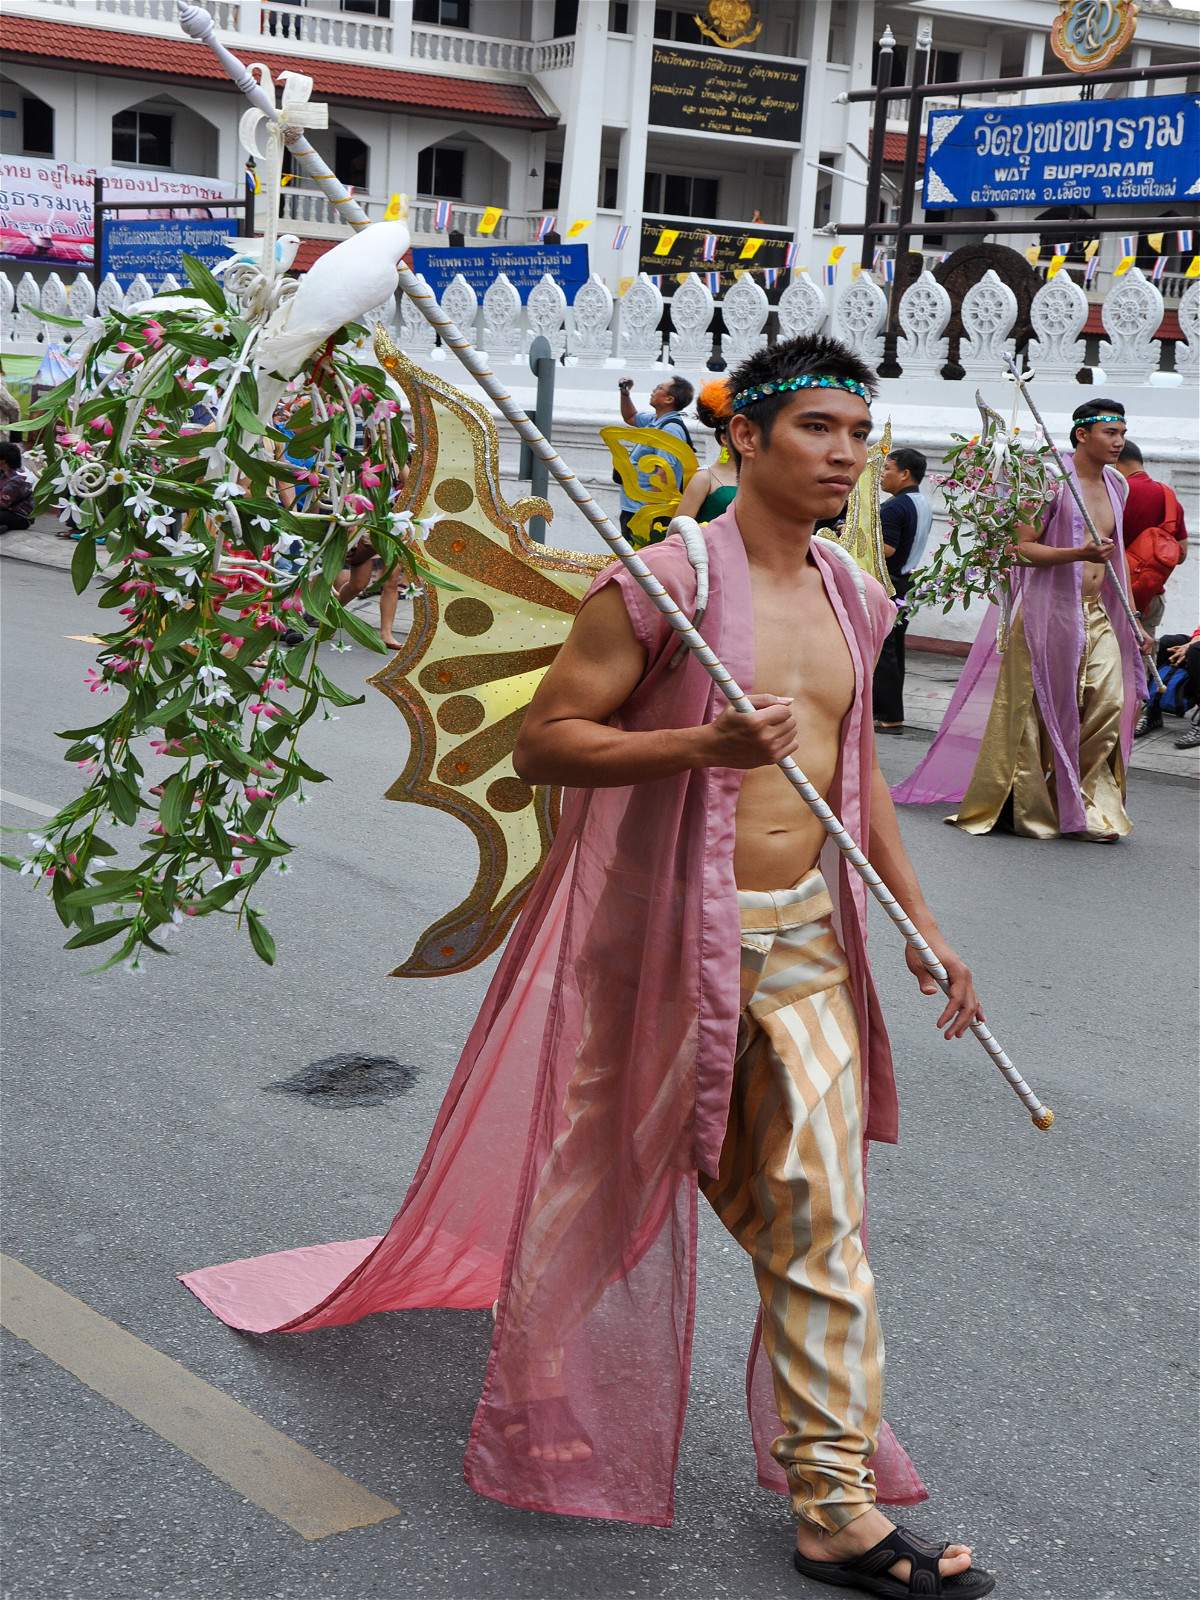 парень азиат с палкой и крыльями на улице